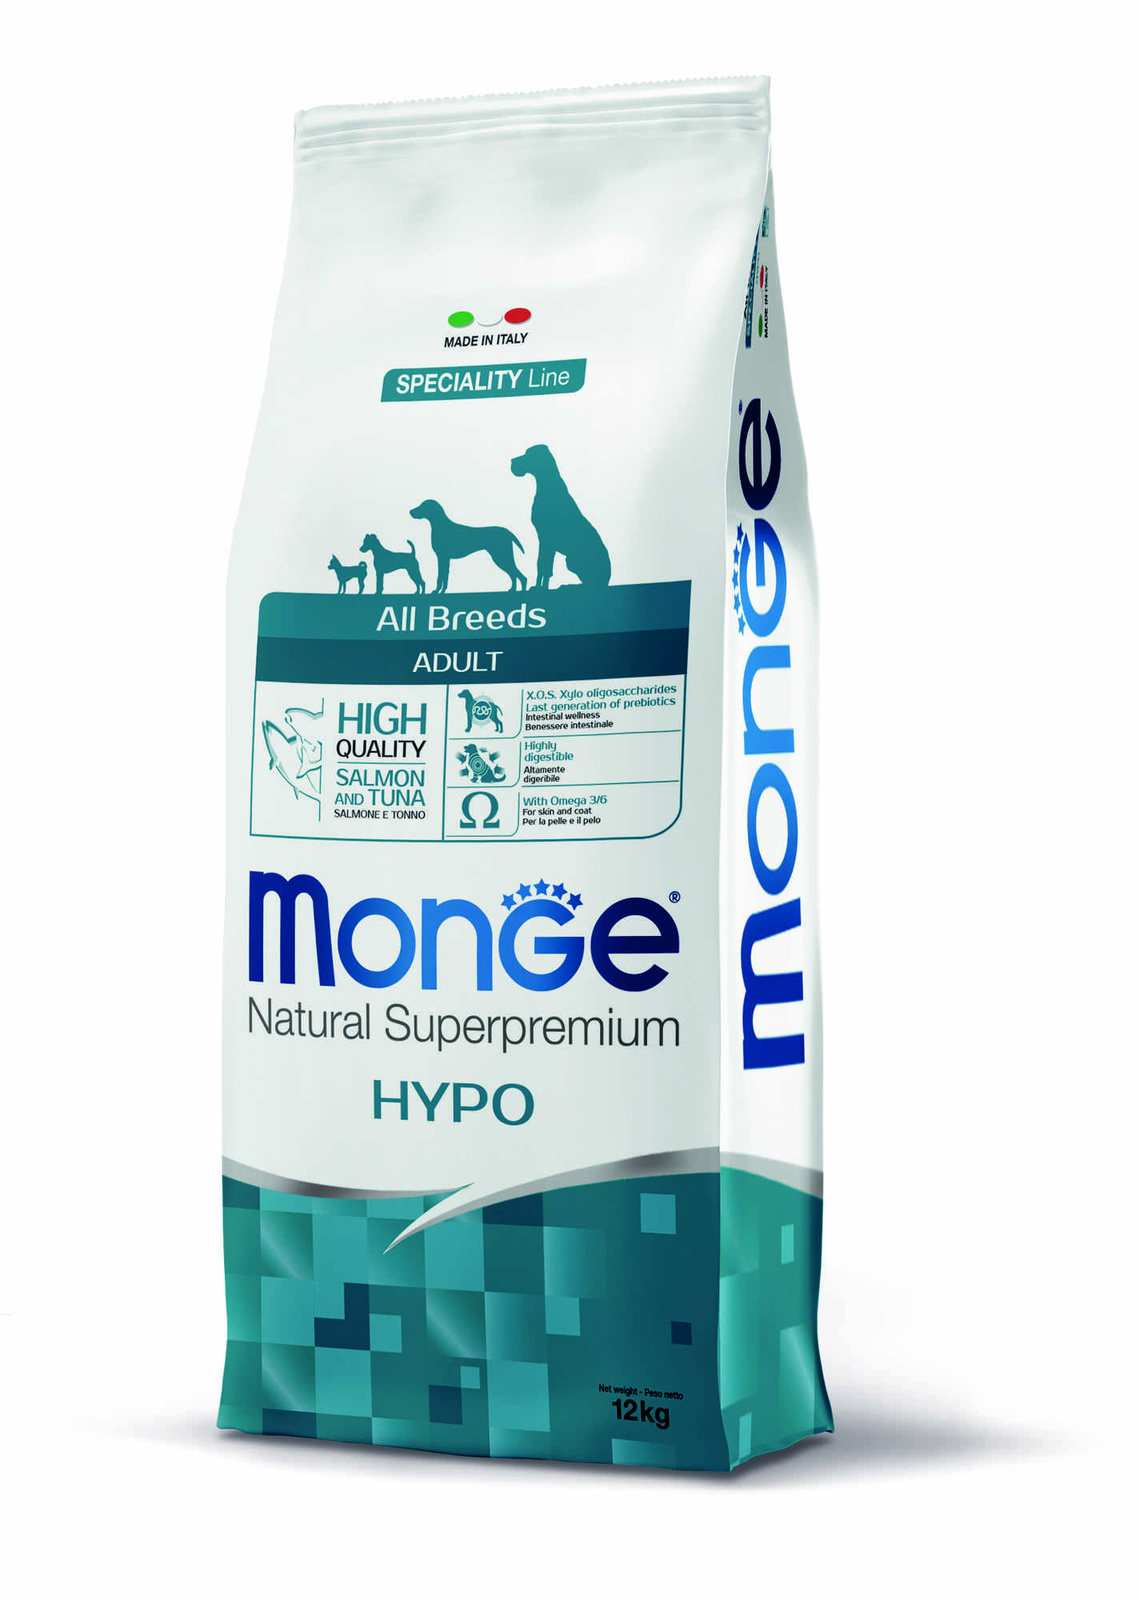 гипоаллергенный корм для собак всех пород, лосось с тунцом (2,5 кг) Monge гипоаллергенный корм для собак всех пород, лосось с тунцом (2,5 кг) - фото 2